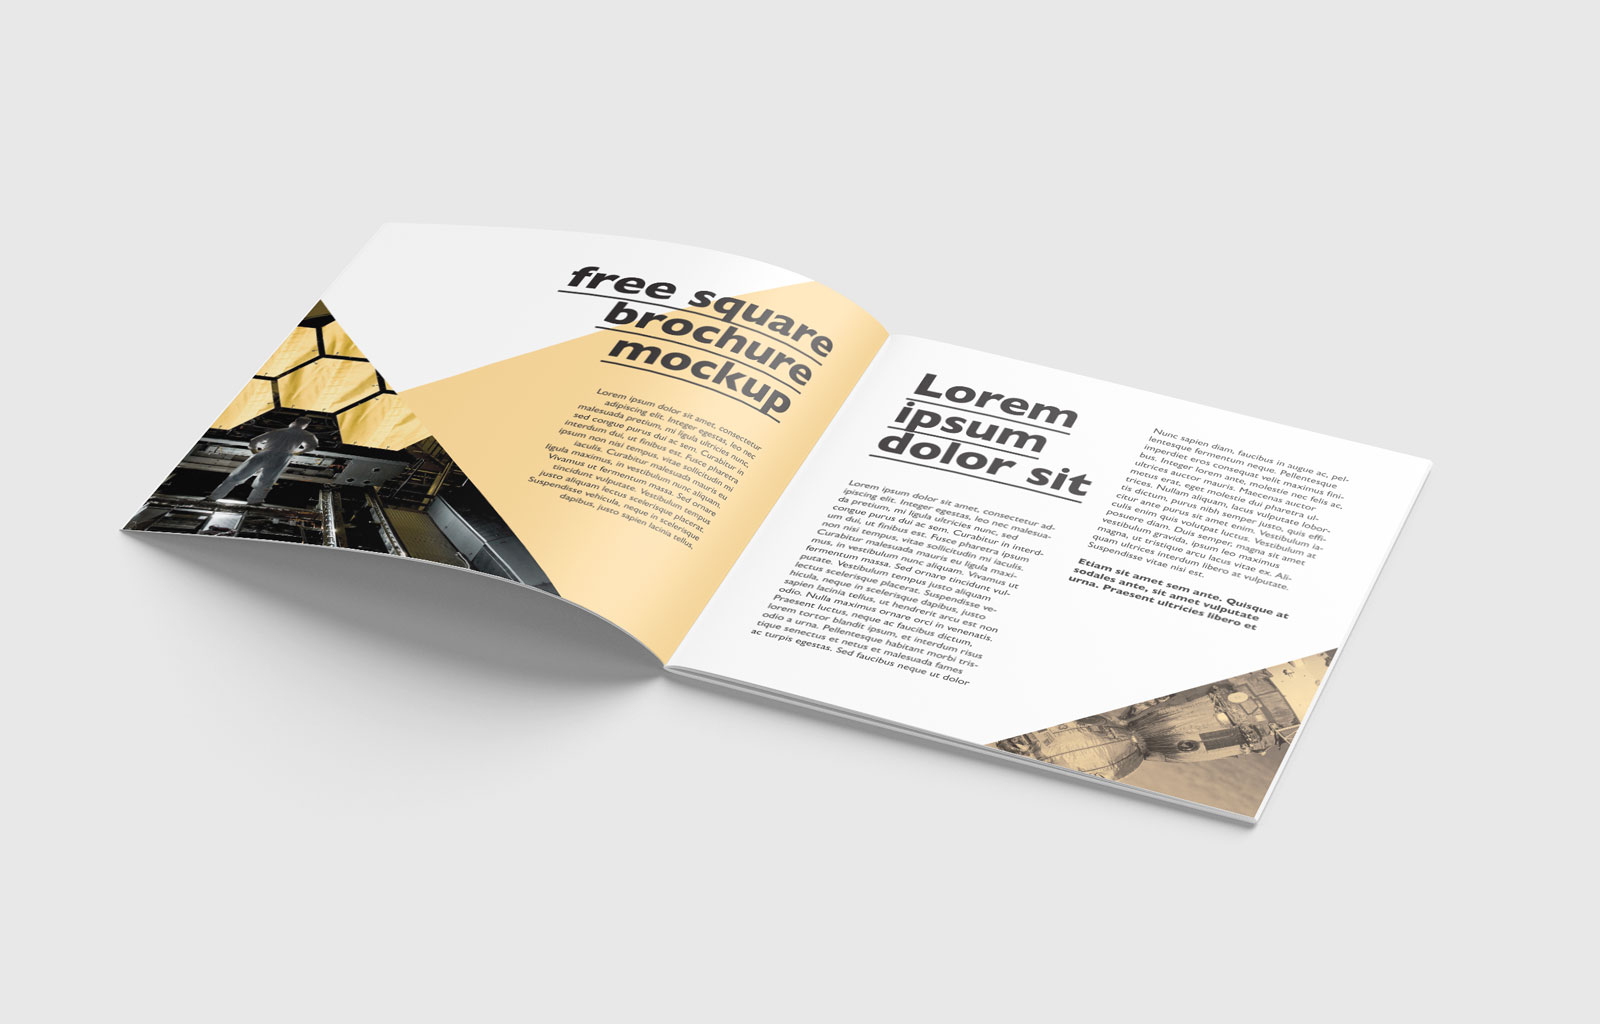 简洁大气正方形画册手册设计展示PSD样机素材brochure mockup .psd素材